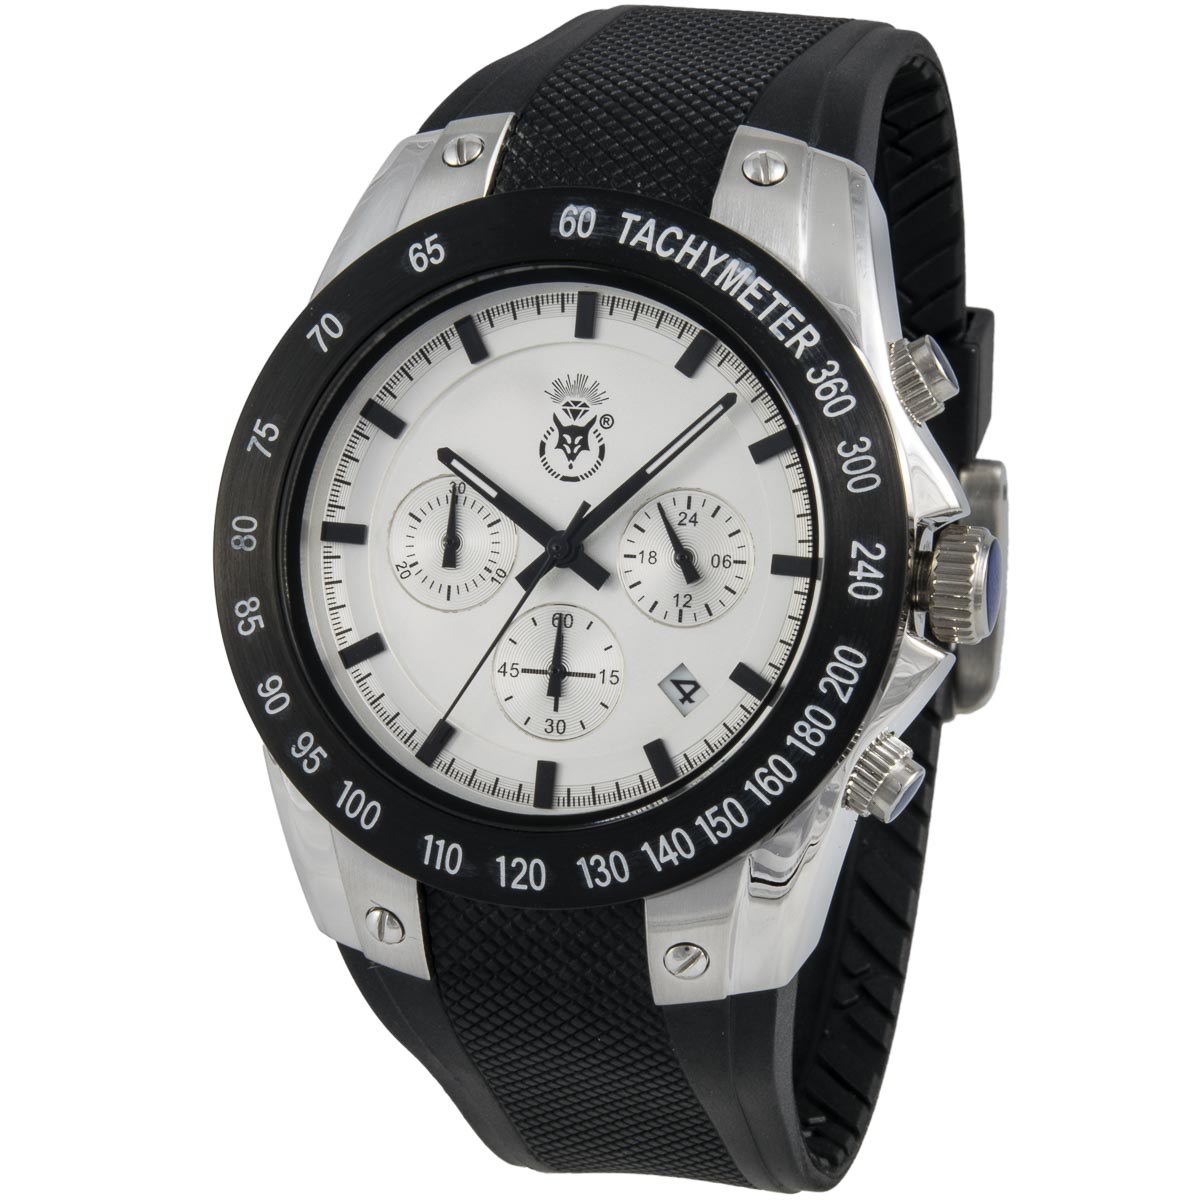 K.V. Fuchs Design Herren Chronograph Armbanduhr mit 24h-Anzeige und Stoppfunktion in schwarz, silber mit Silikonarmband in schwarz »CH-129-01-Silber«